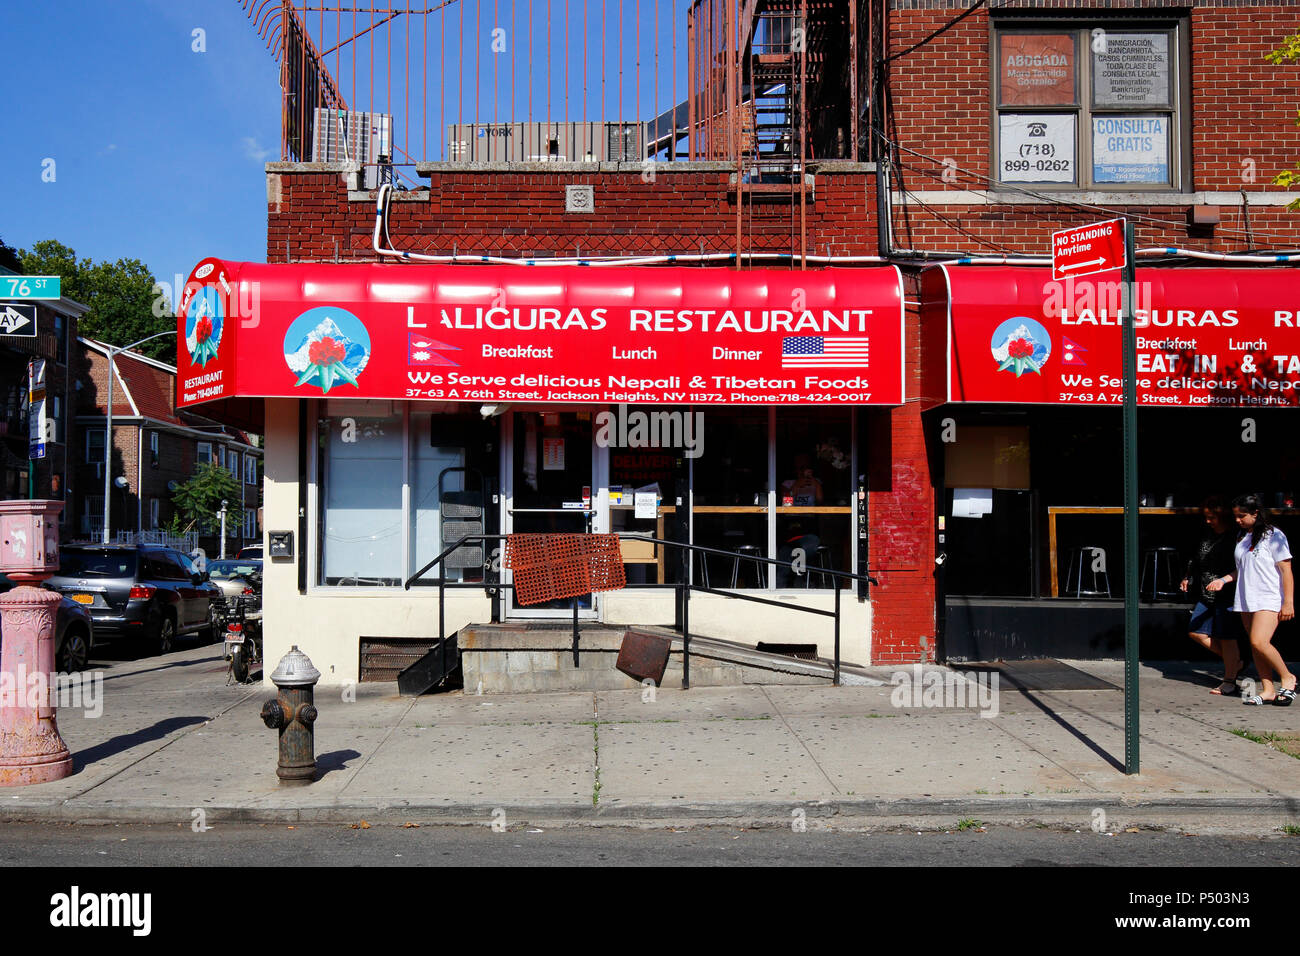 Lali Guras, 37-63 76th St, Queens, New York. Foto del negozio di New York di un ristorante nepalese nel quartiere di Jackson Heights. Foto Stock